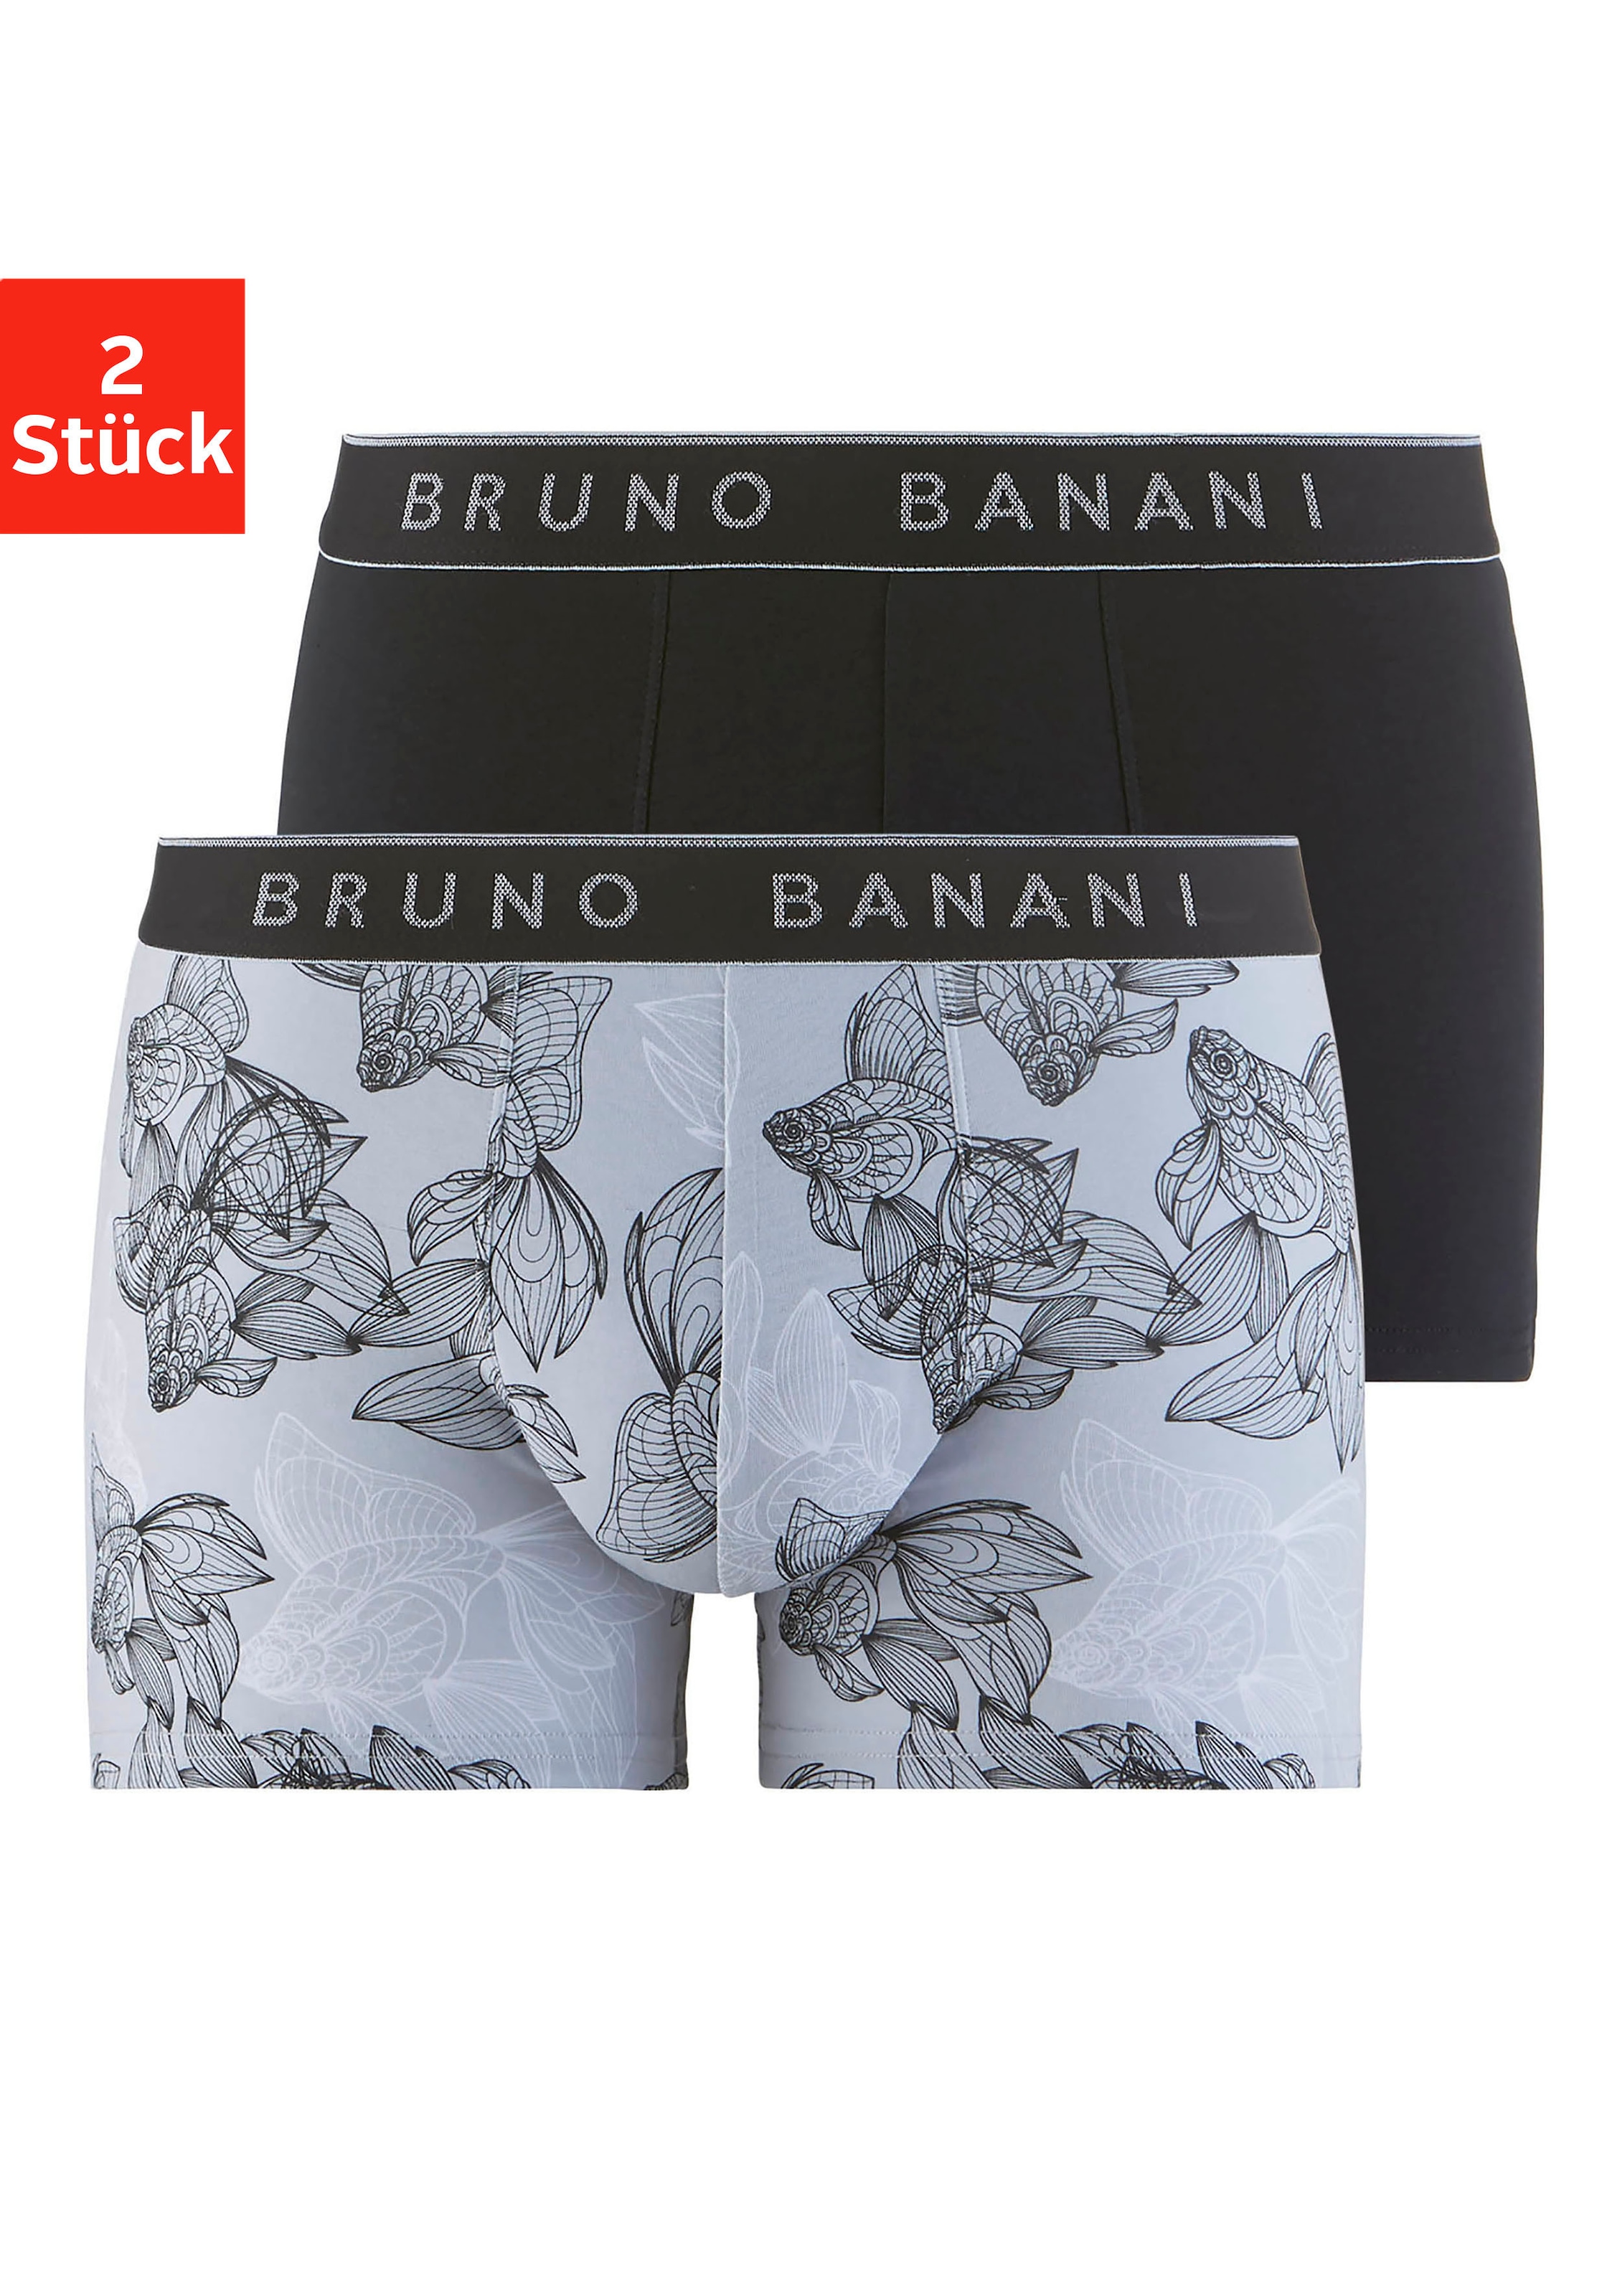 Bruno Banani Kelnaitės šortukai (Packung 2 St.)